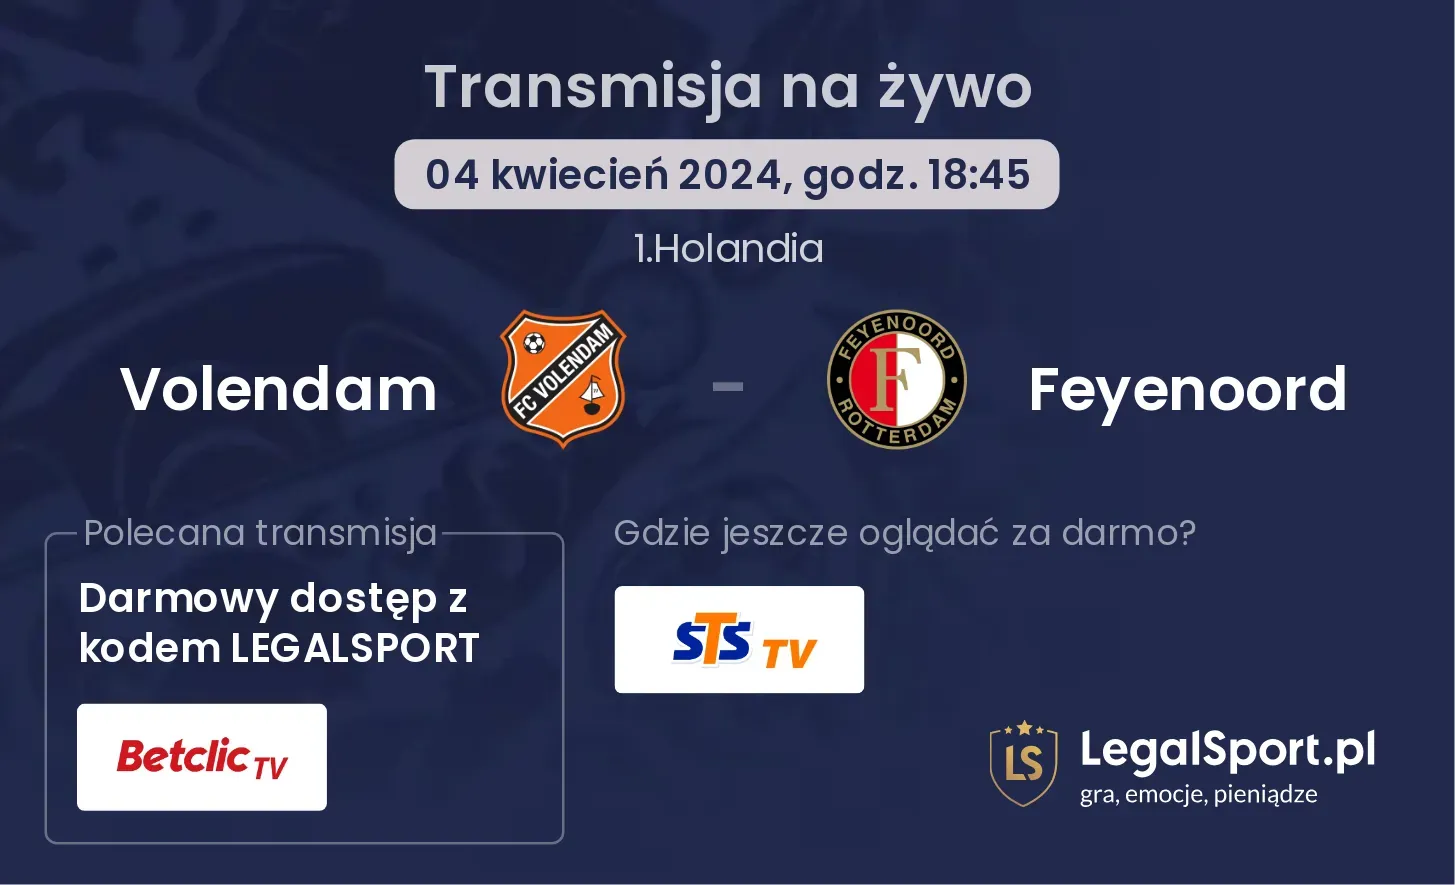 Volendam - Feyenoord transmisja na żywo